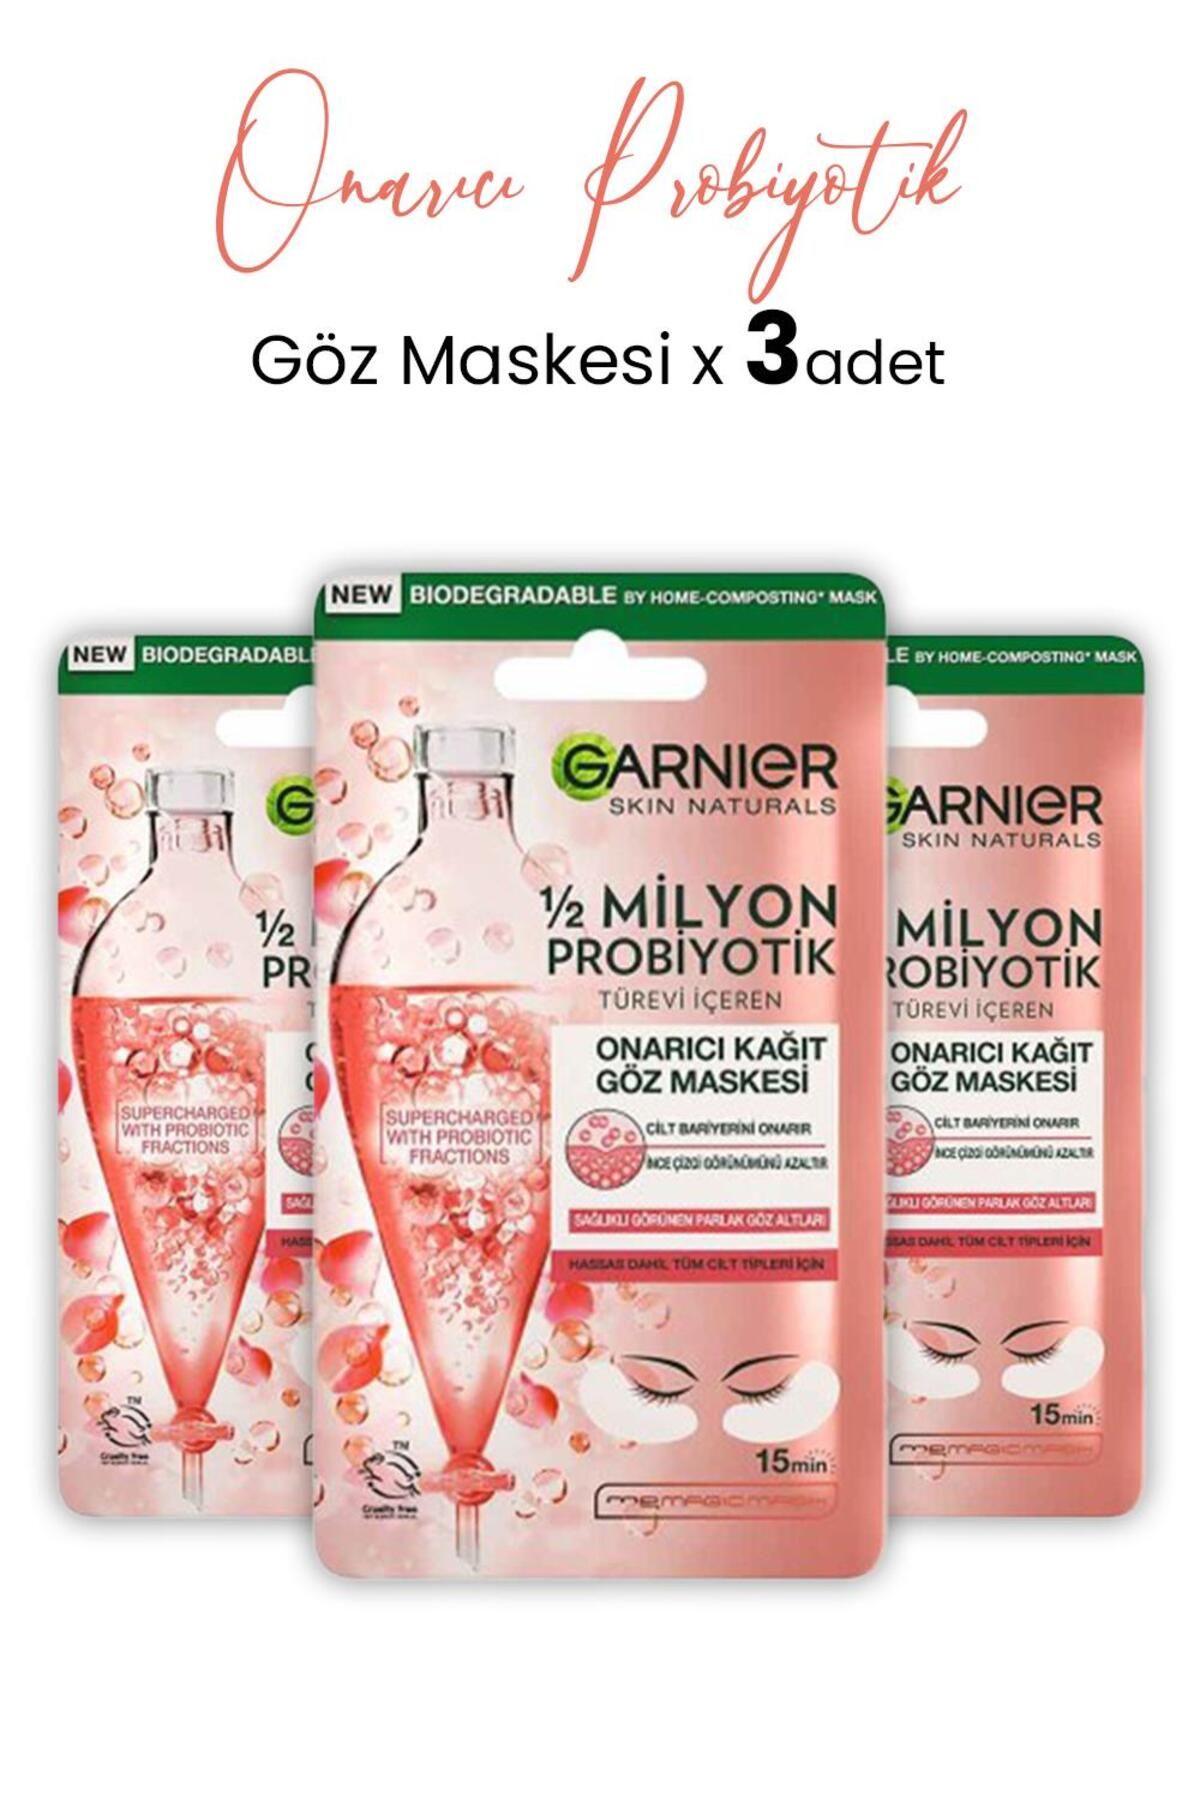 Garnier Kağıt Göz Maskesi Onarıcı Probiyotik 6 gr X 3 Adet